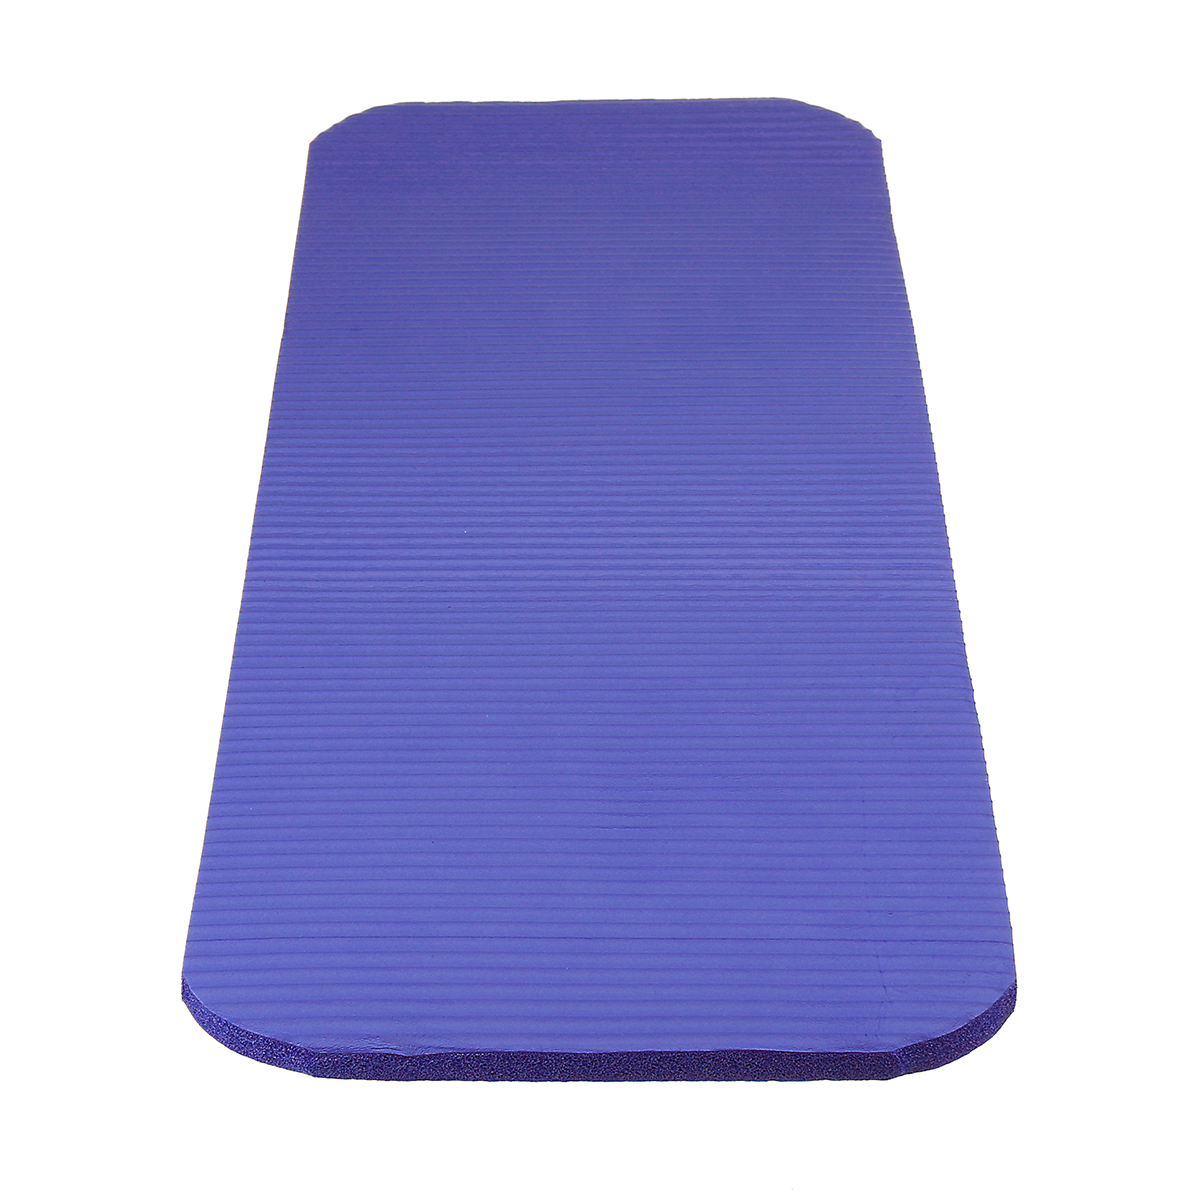 Yoga-Mats-Anti-Slip-Exercise-Fitness-Meditation-Pilate-Pads-Exerciser-Home-Gym-1715227-7